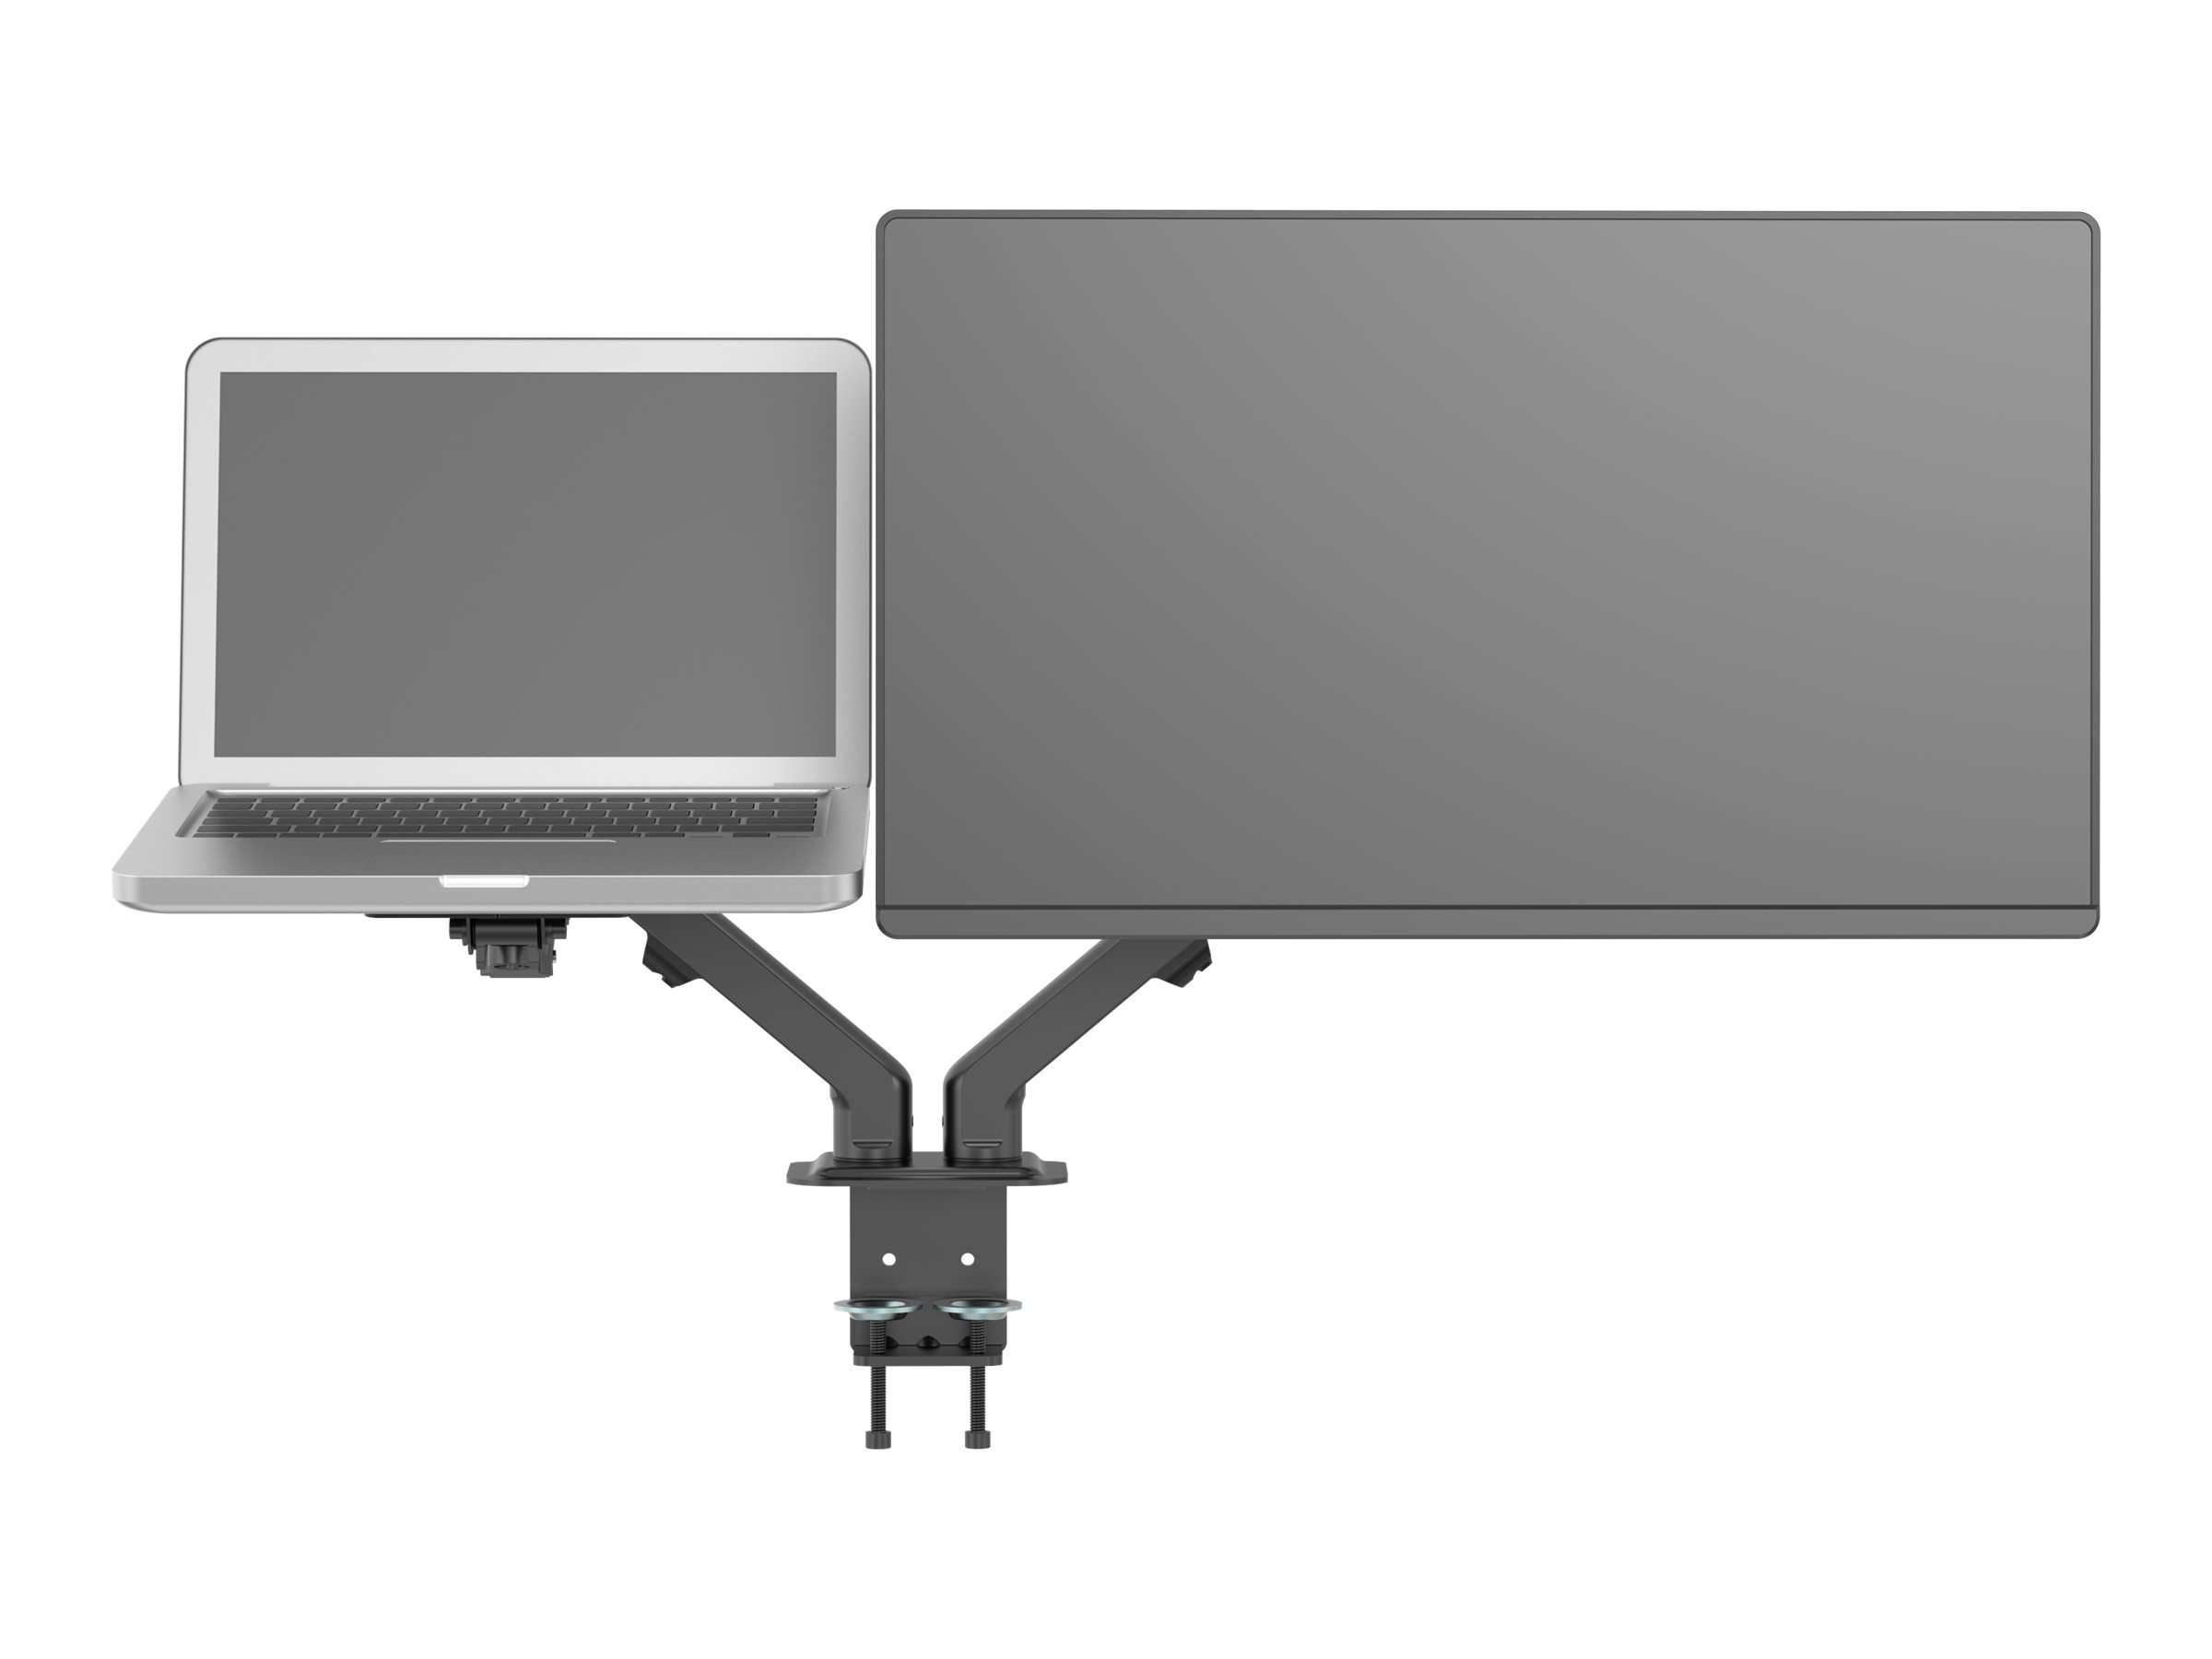 Vision VFM-DAD/4 - Befestigungskit - einstellbarer Arm - fr 2 LCD-Displays oder LCD-Display und Notebook/Tablet - Aluminium, St